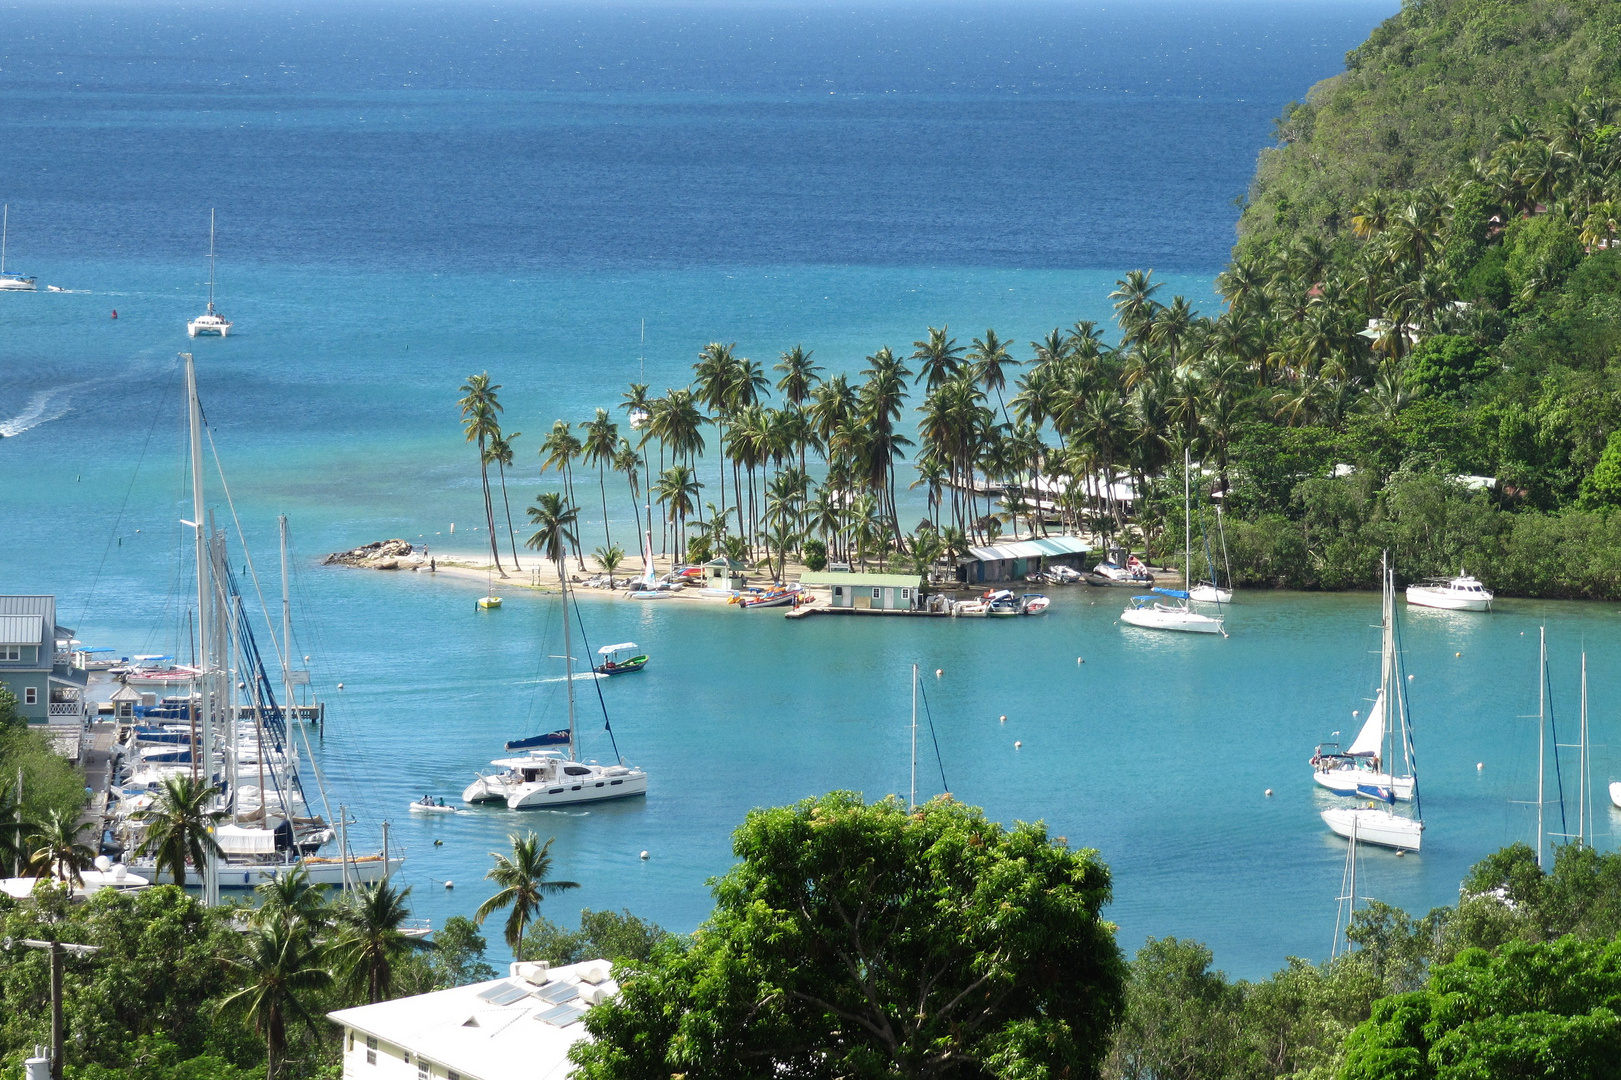 Segeltörn Karibik: Blick auf die Bucht von Marigot Bay, Location für viele Karibikfilme.